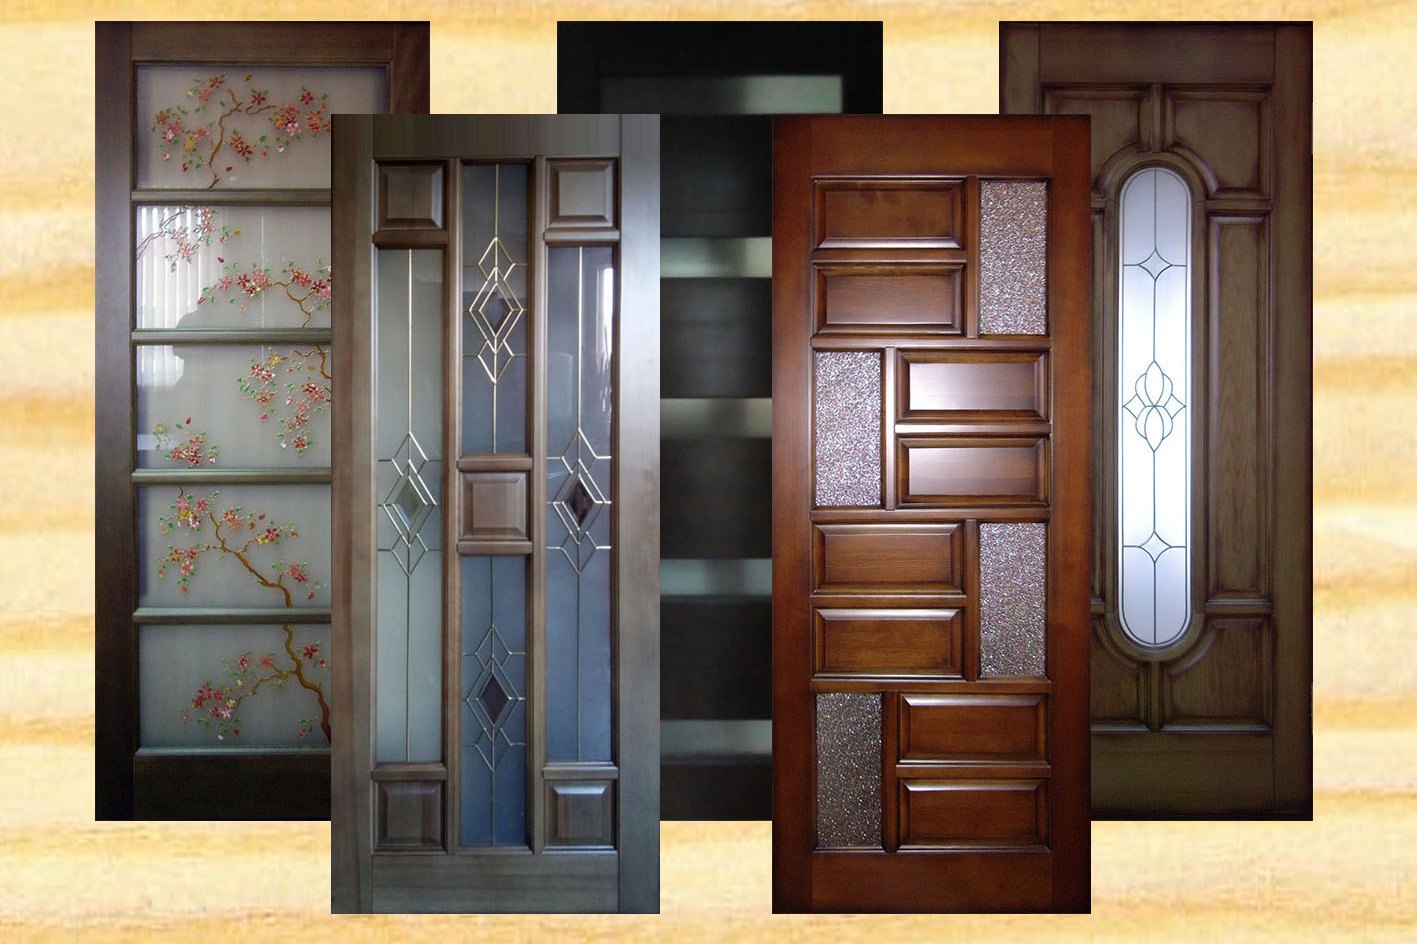 Купить образцы двери. Межкомнатные двери. Красивые межкомнатные двери. Деревянные двери в интерьере. Двери межкомнатные деревянные.